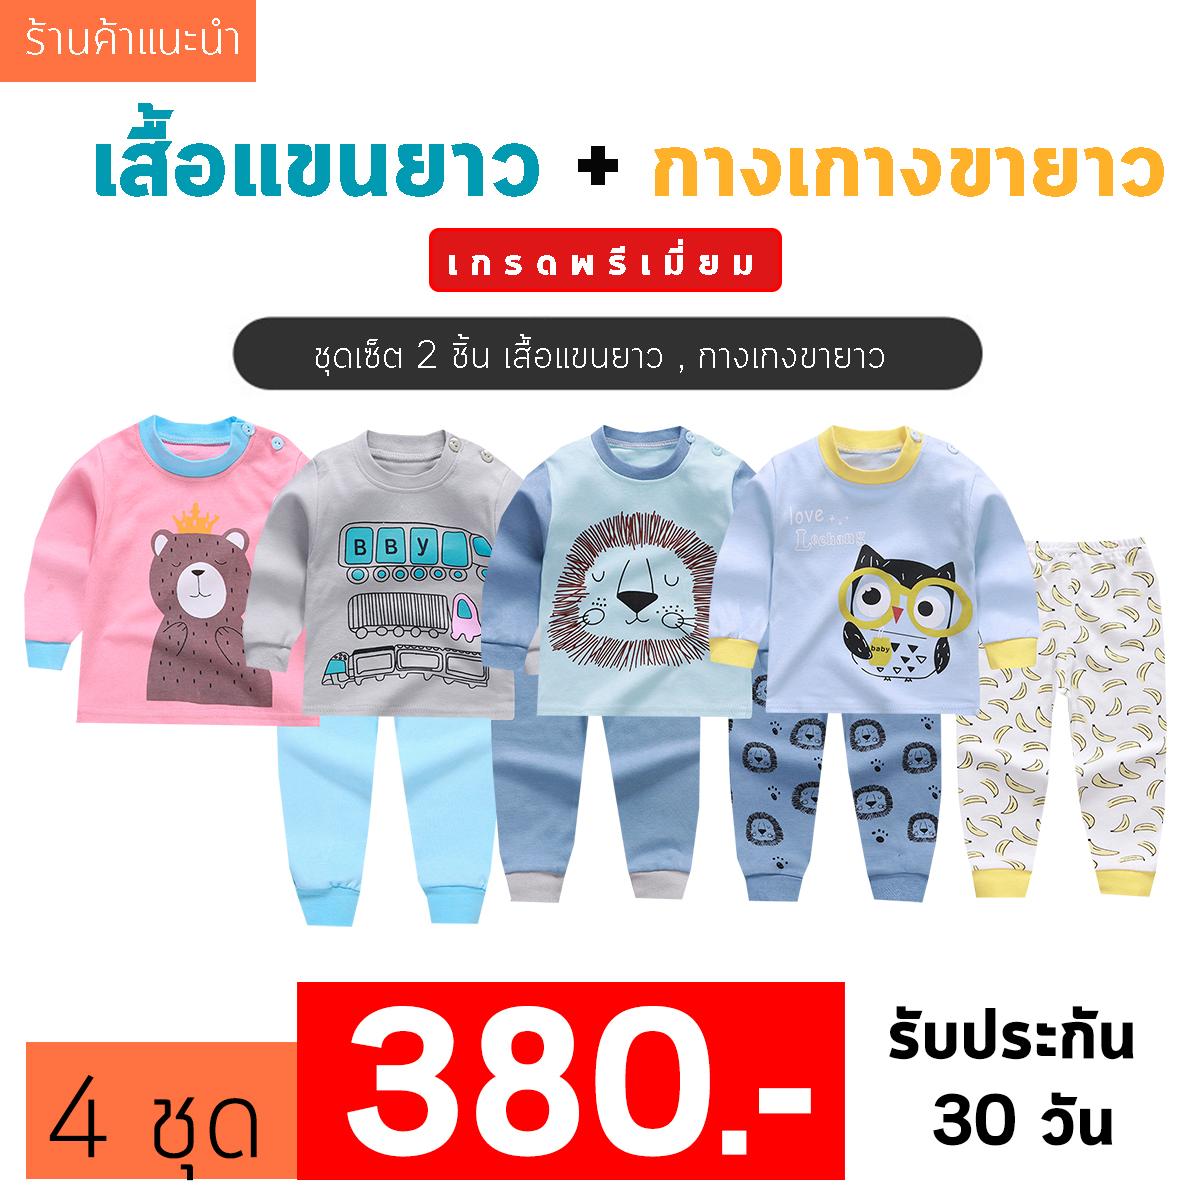 ราคา ❤️Baby Thailand ชุดเสื้อผ้าเด็ก ชุดนอน เด็ก ชุดเสื้อผ้าเด็ก ชุดนอน เด็ก [เซ็ต2ชิ้น] [ เสื้อแขนยาว + กางเกงขายาว ]ใส่สบายเนื้อผ้า Cotton ราคาพิเศษ ไซส์ 80 -120cm/ 6เดือน-5ปี ชุดนอนเด็ก ผ้านิ่ม เนื้อผ้า